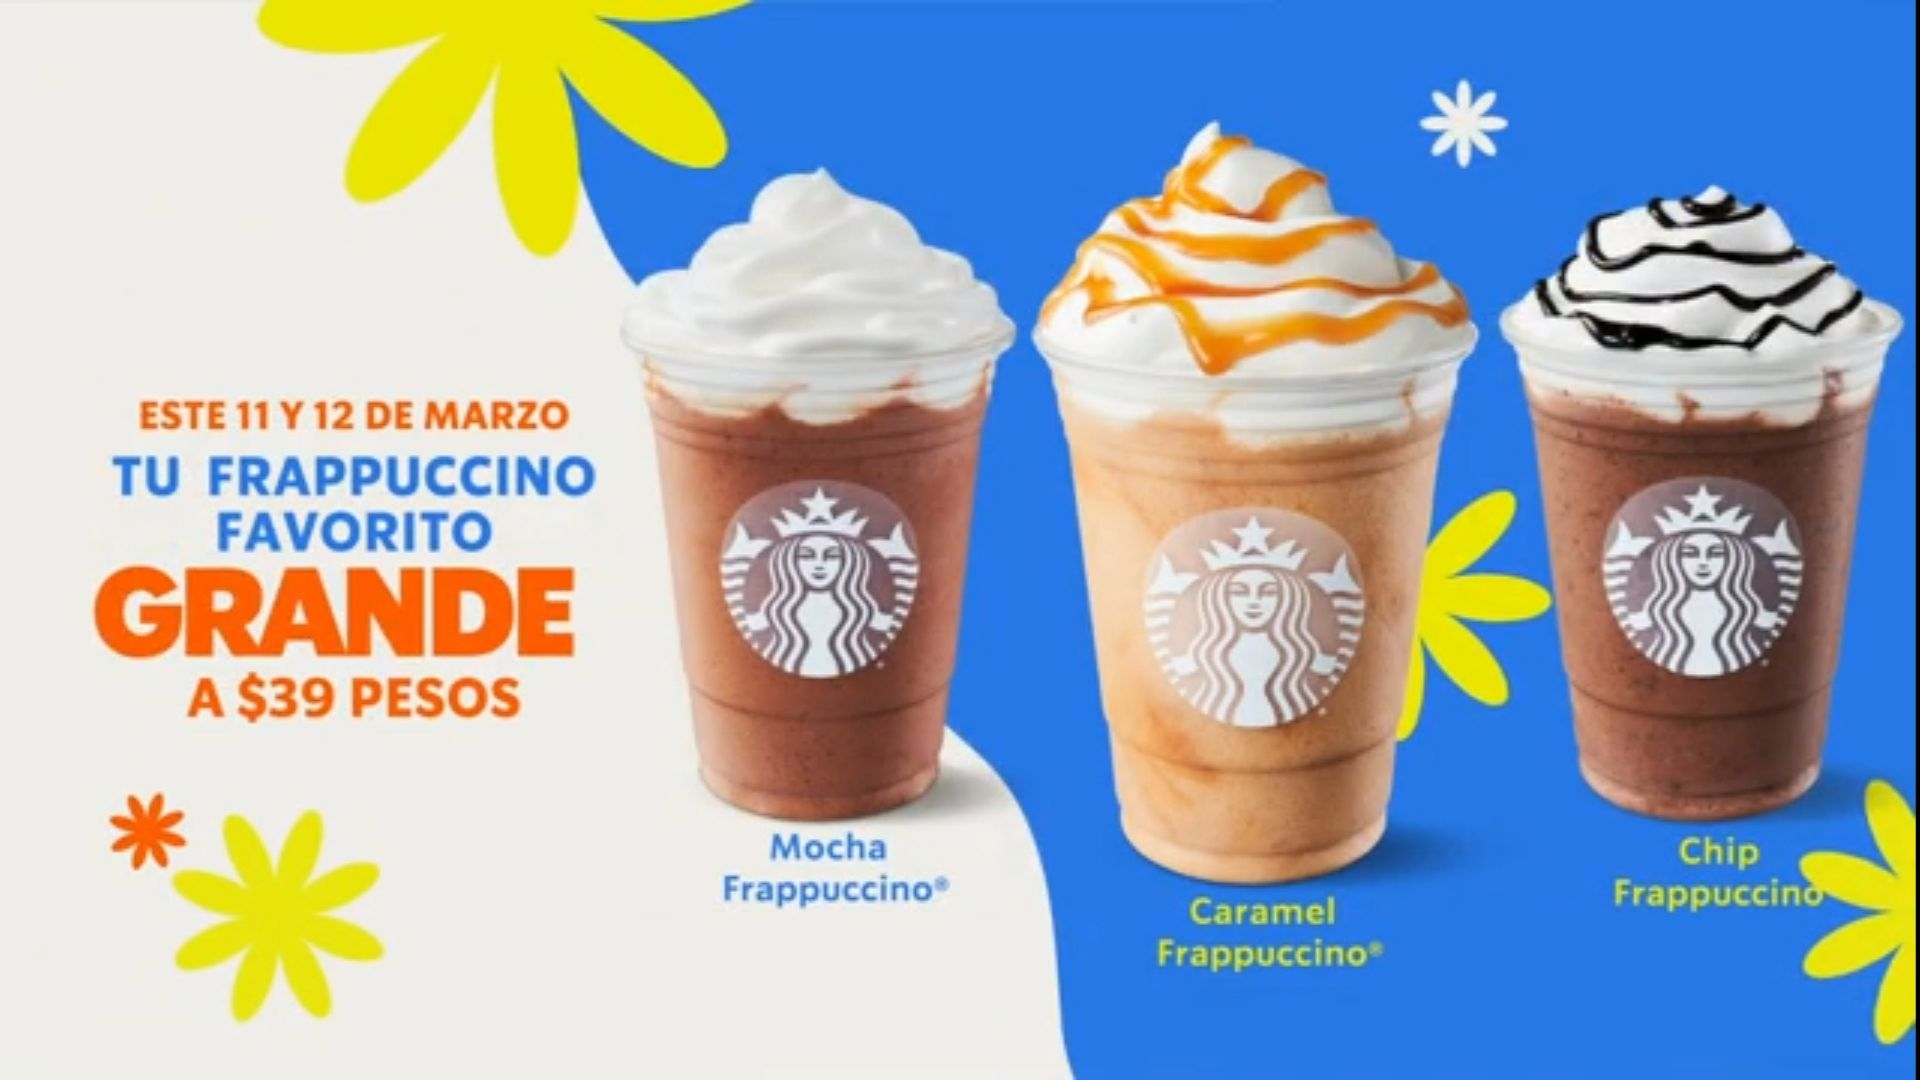 Starbucks Frappuccino Grande a $39